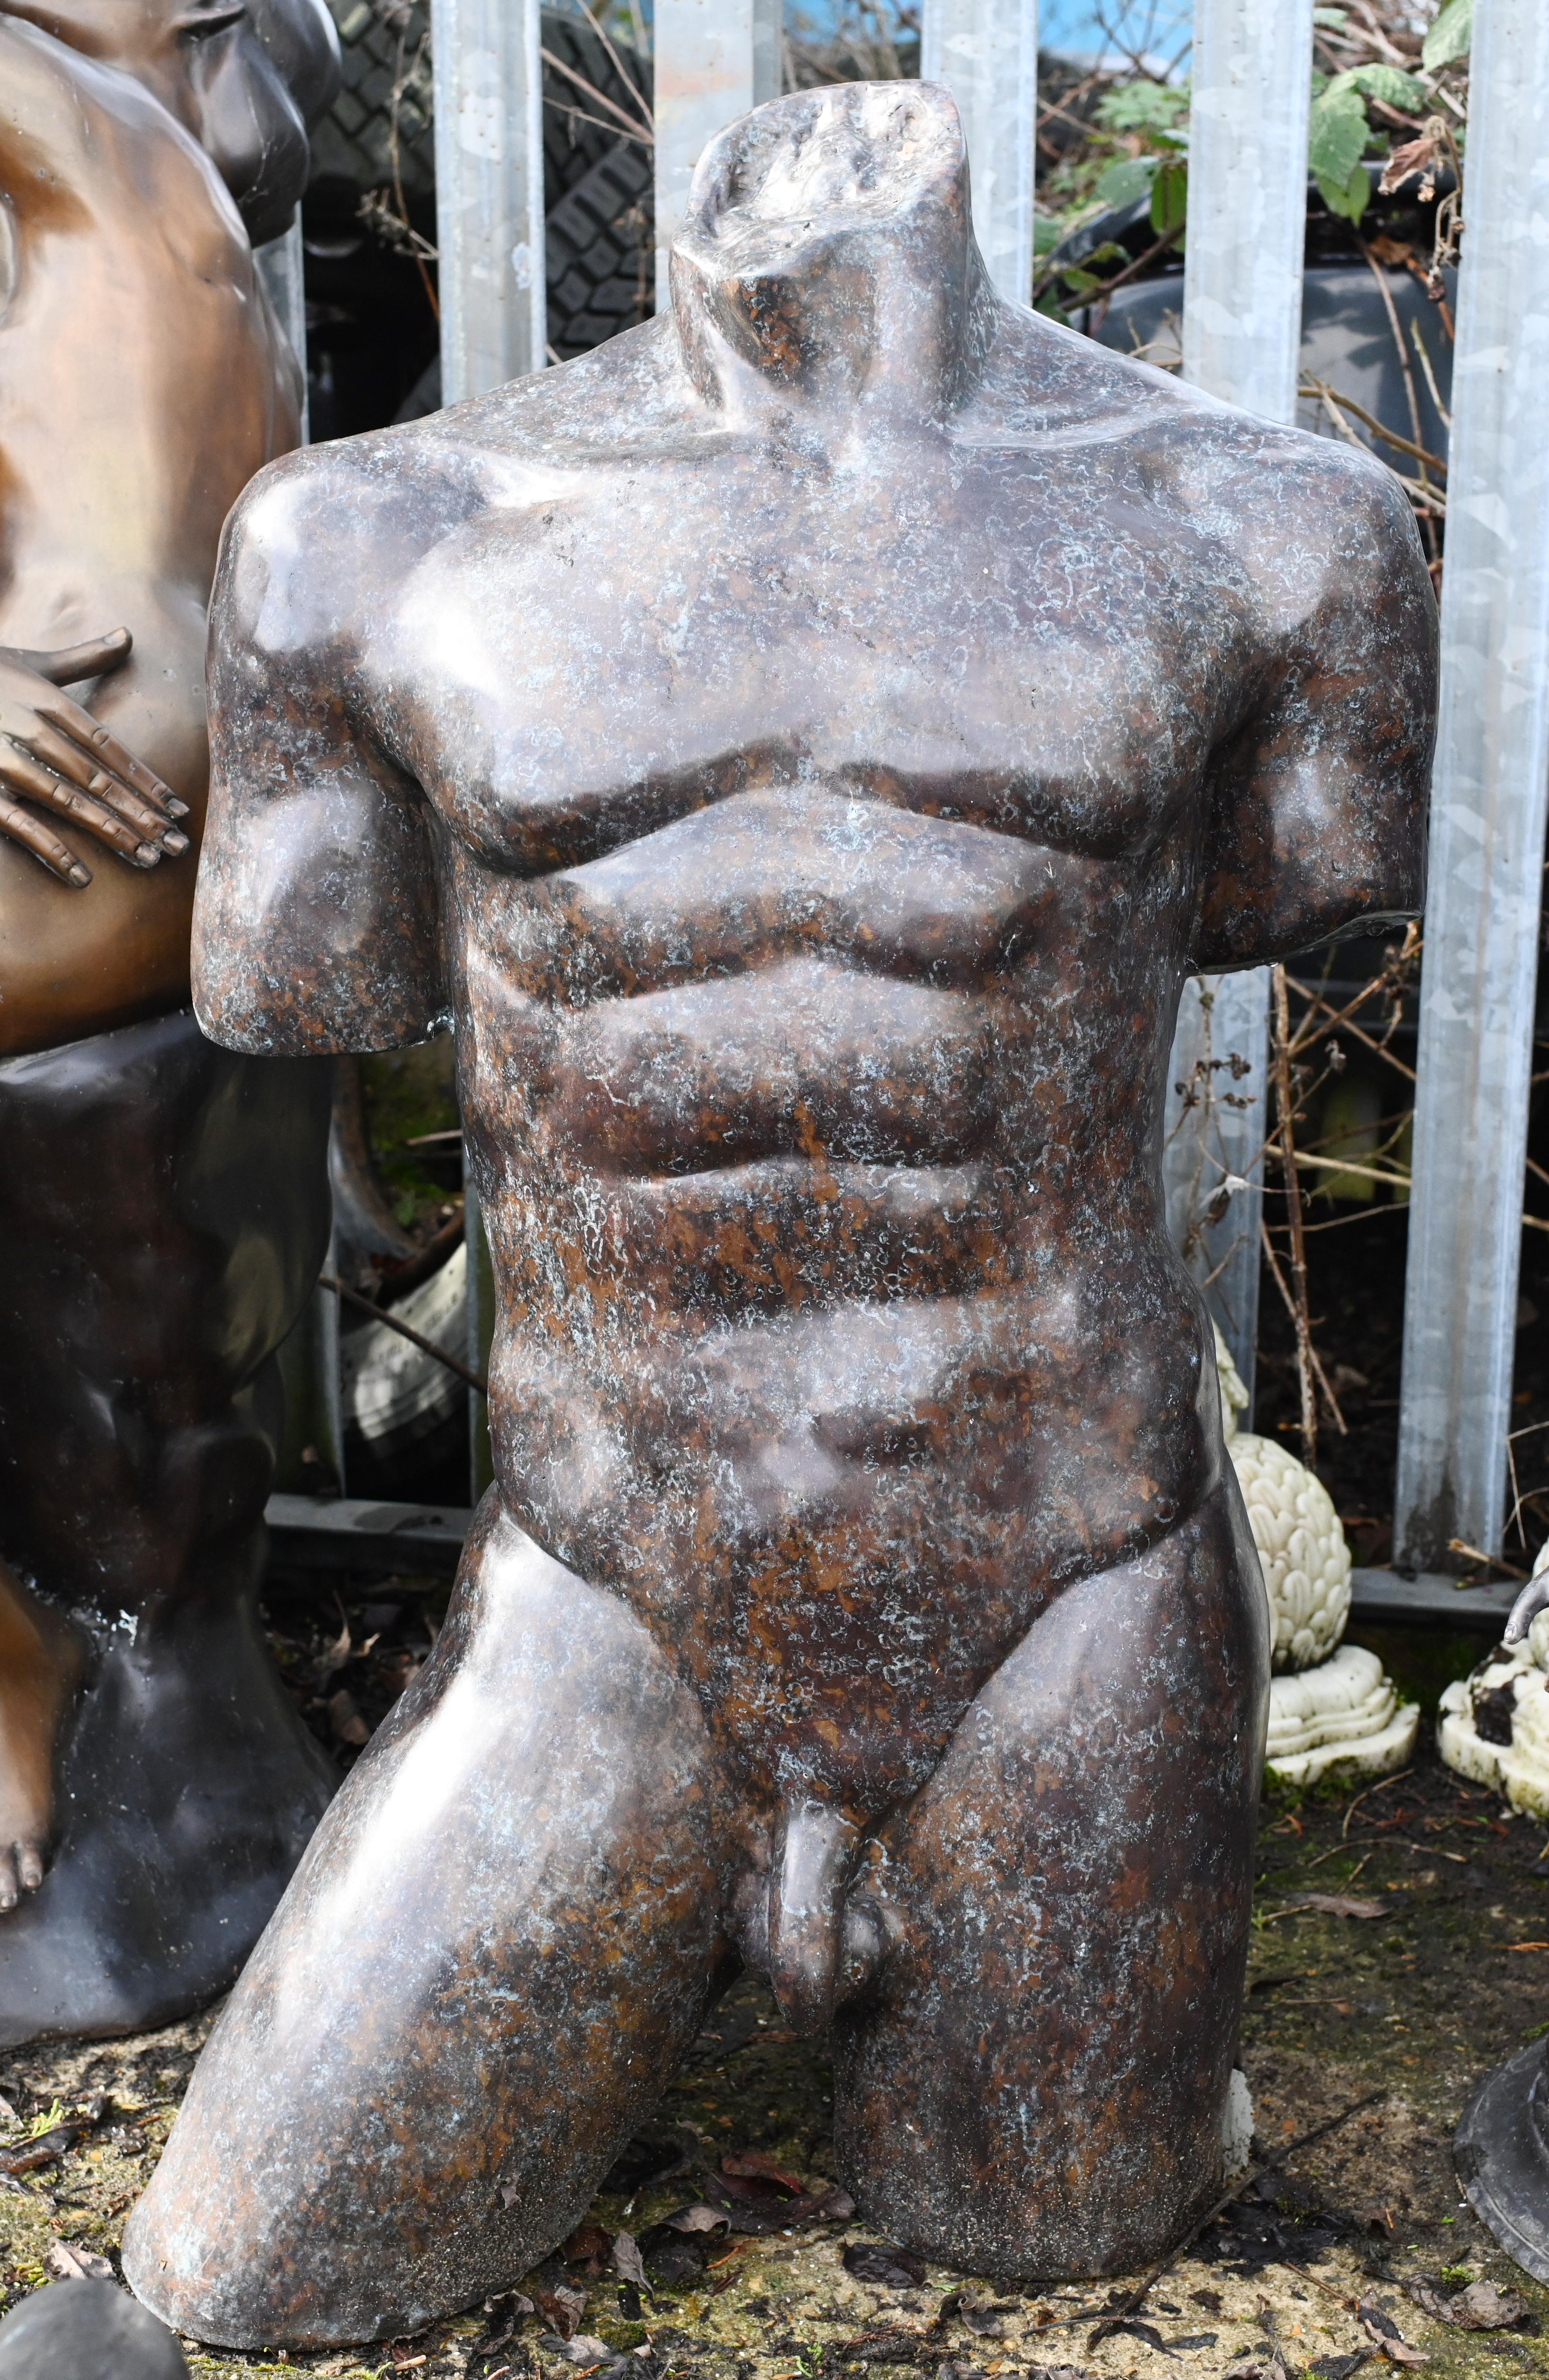 Magnifique statue italienne de torse nu masculin sculptée à la main
Pièce idéale pour ajouter un air d'antiquité classique à tout intérieur ou extérieur.
Il serait parfait sur un socle - nous en avons beaucoup, n'hésitez pas à nous contacter.
Bonne